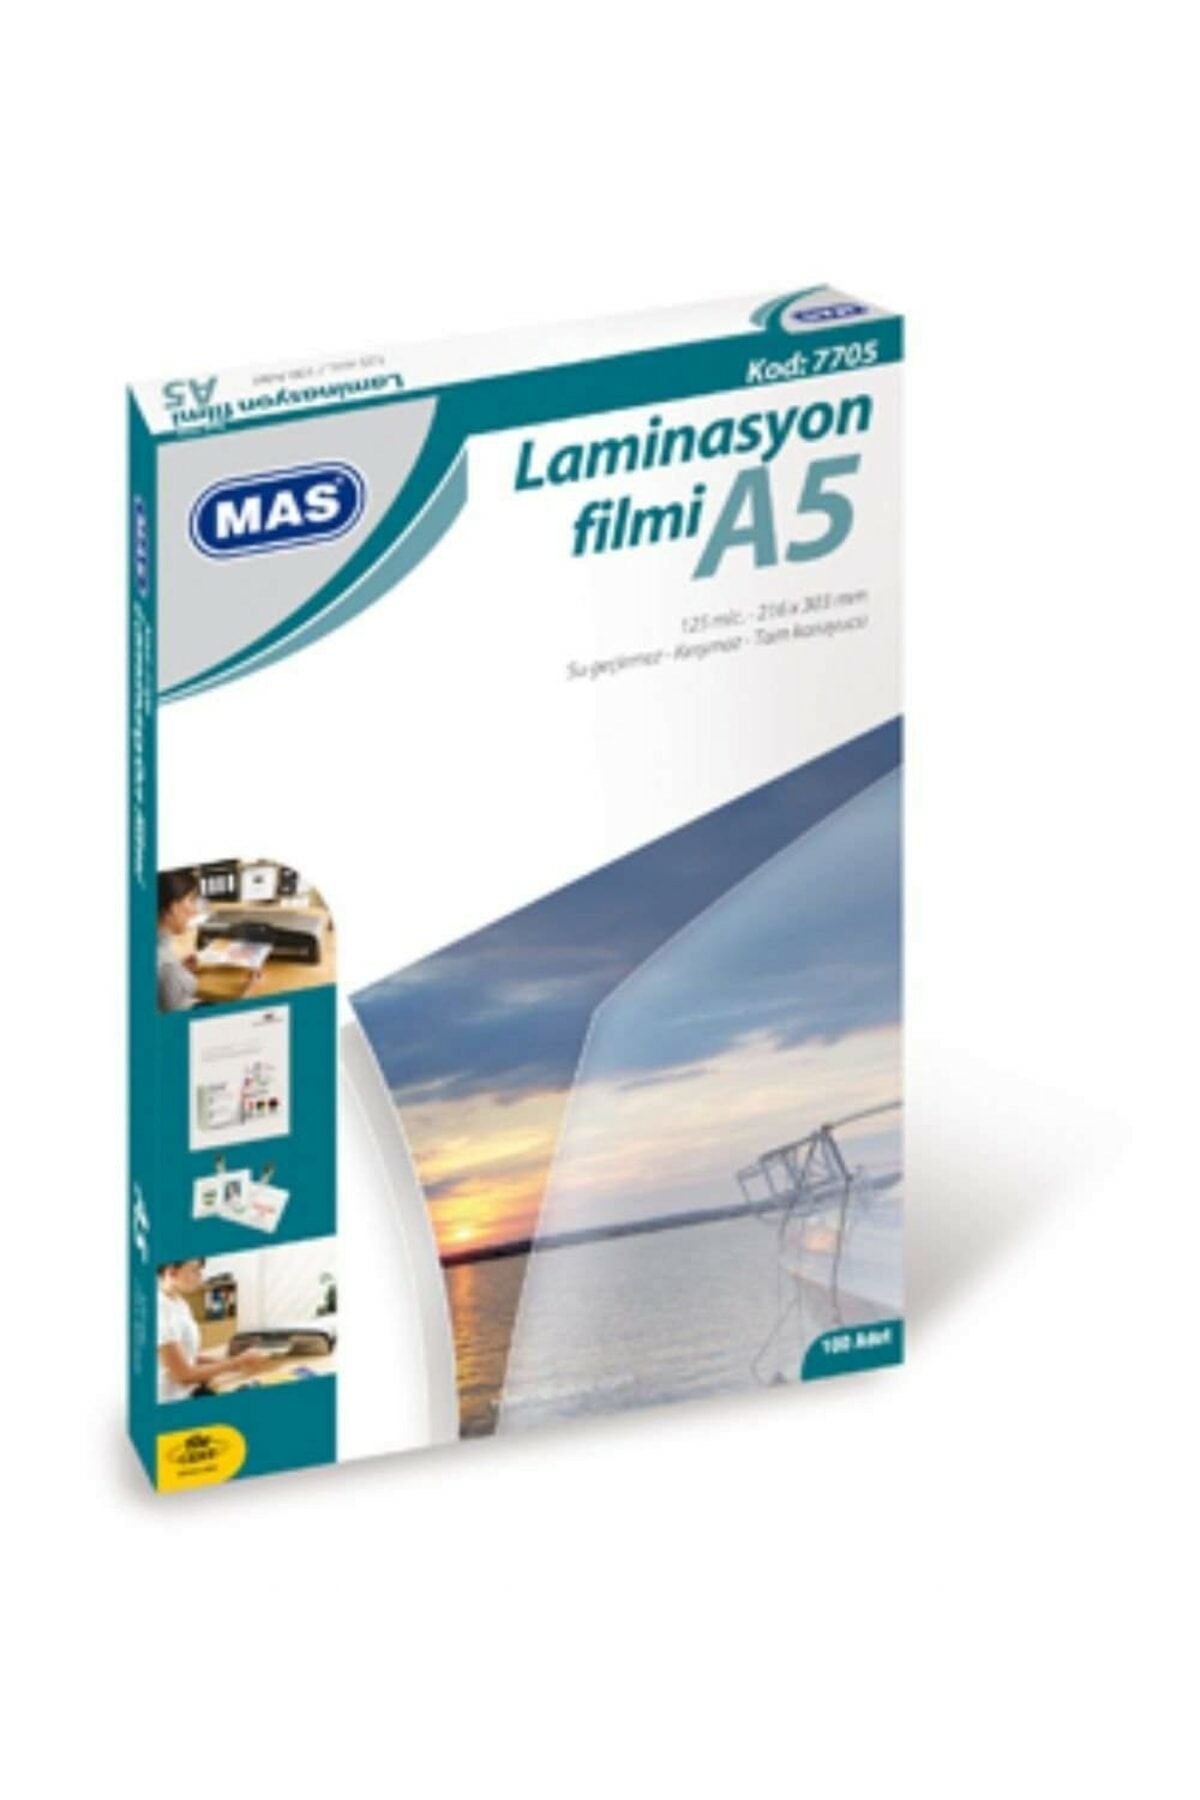 Mas A5 Laminasyon Filmi 7705